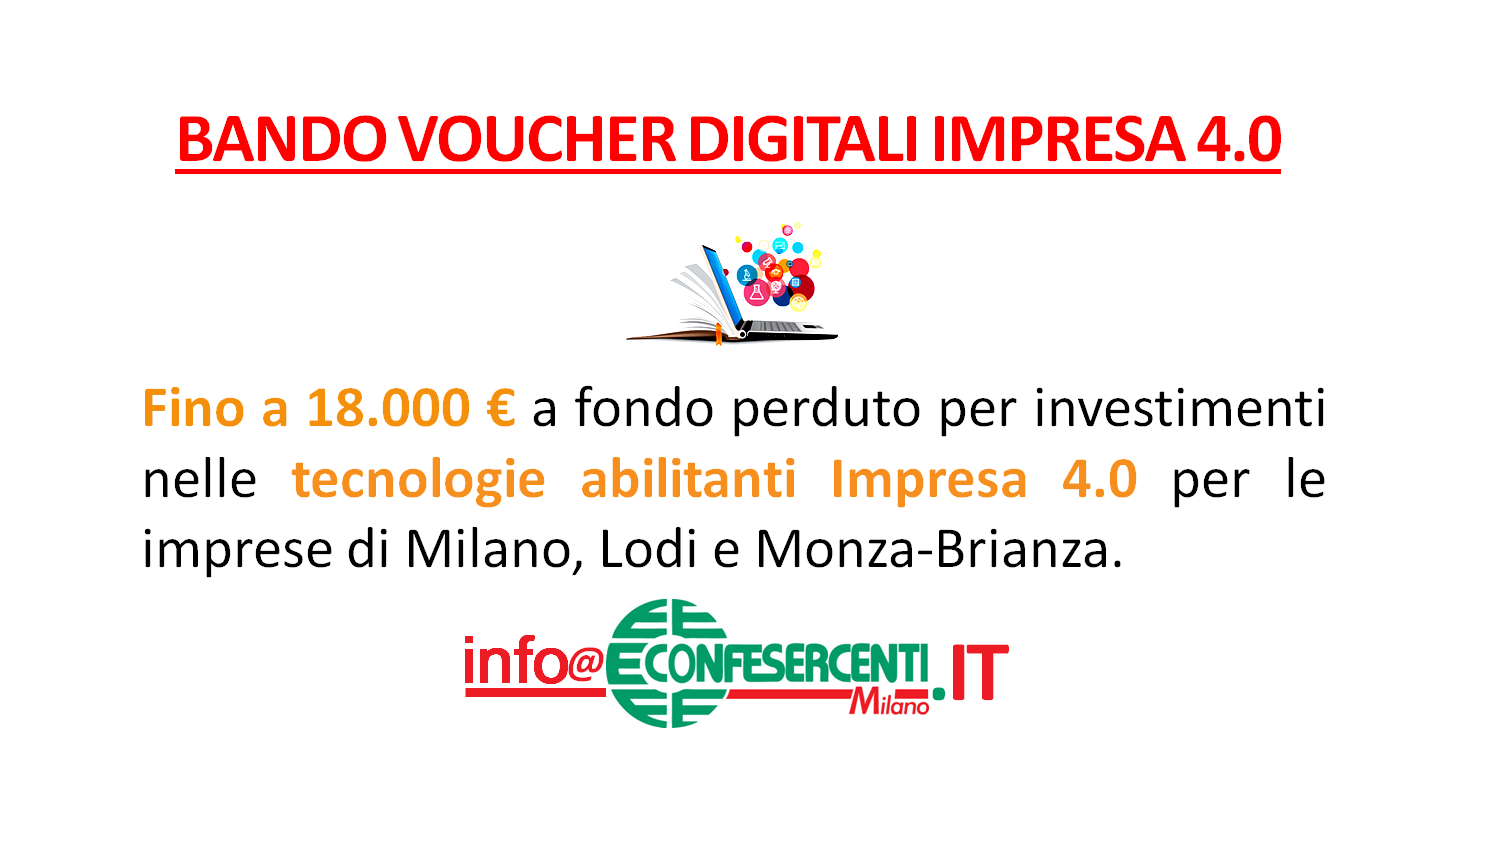 [BANDO CHIUSO] Voucher digitali Impresa 4.0, Bando CCIAA Milano, Lodi, Monza e Brianza